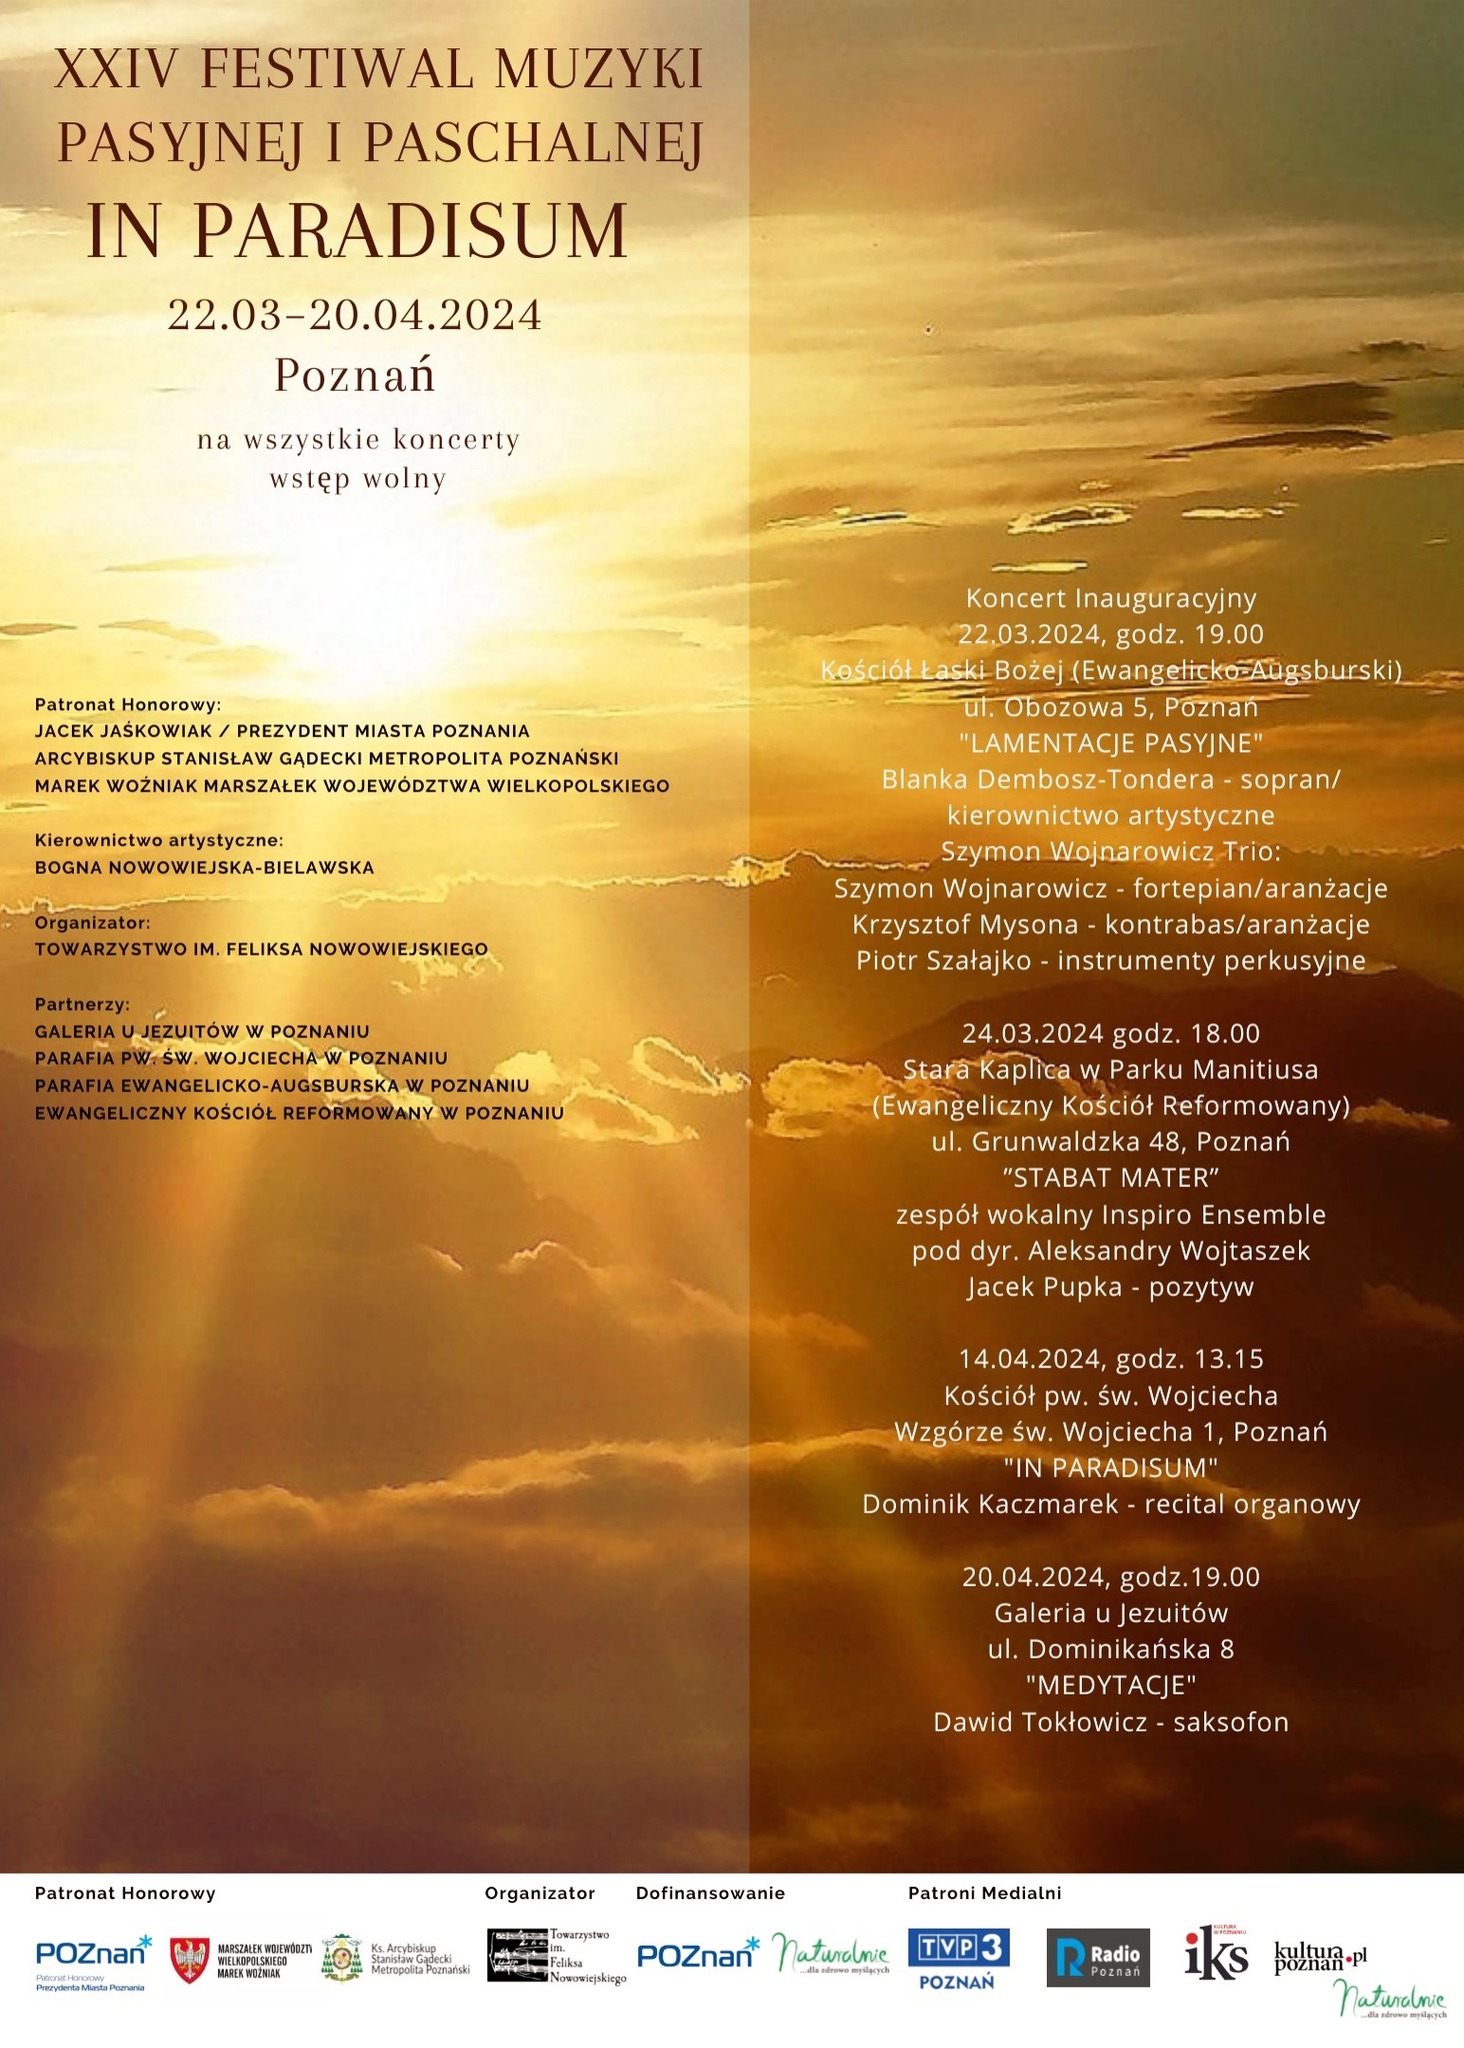 XXIV Festiwal Muzyki Pasyjnej i Paschalnej "In Paradisum"